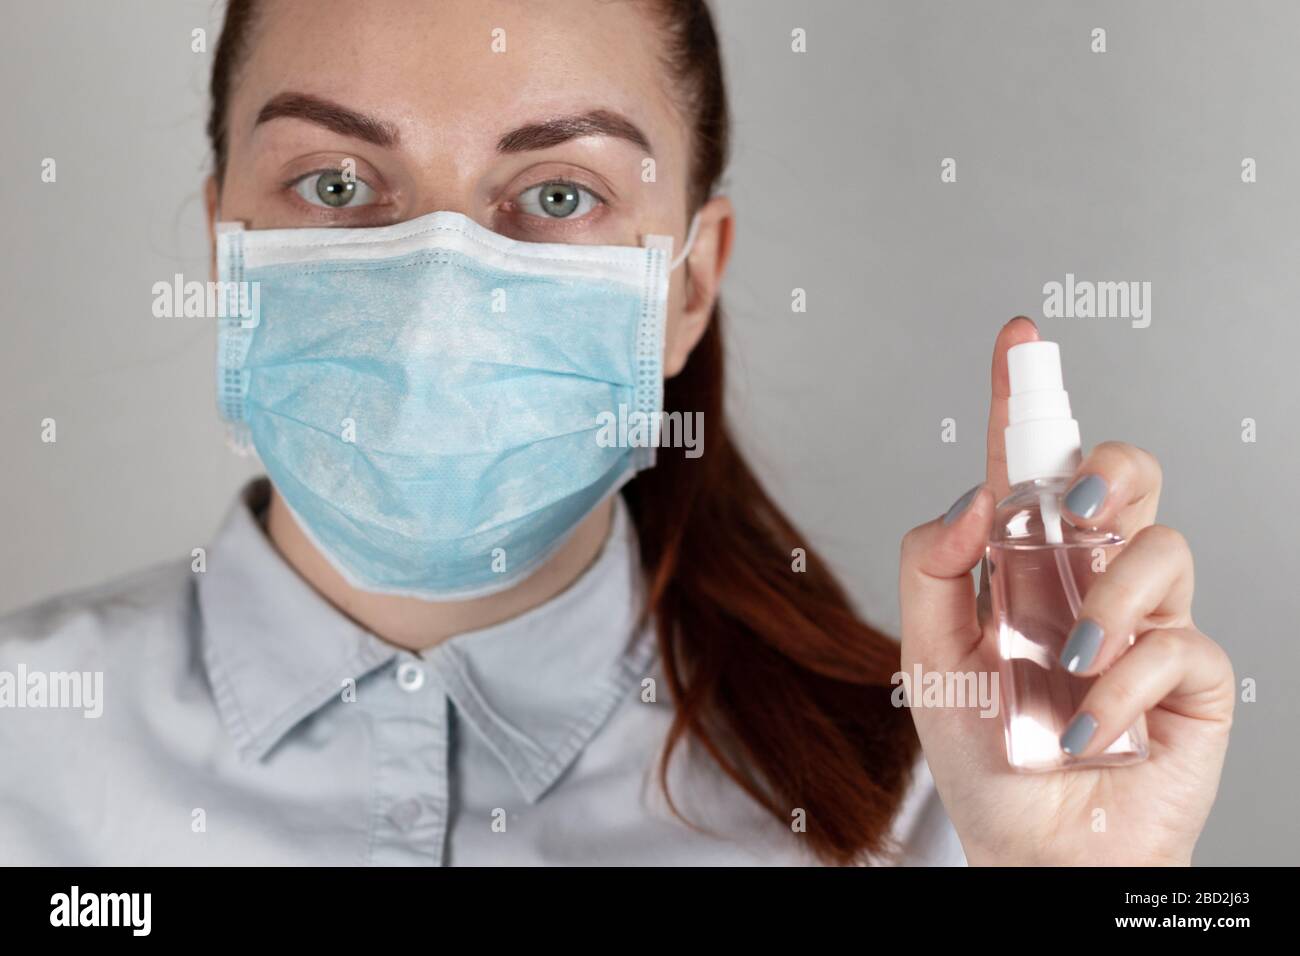 Una niña joven doctor en una máscara sostiene un spray desinfectante en su mano sobre un fondo gris. Cierre la persona con un spray limpiador Foto de stock